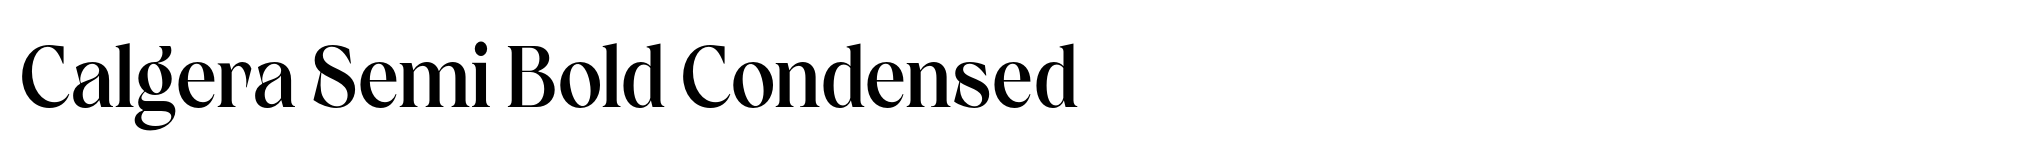 Calgera Semi Bold Condensed image